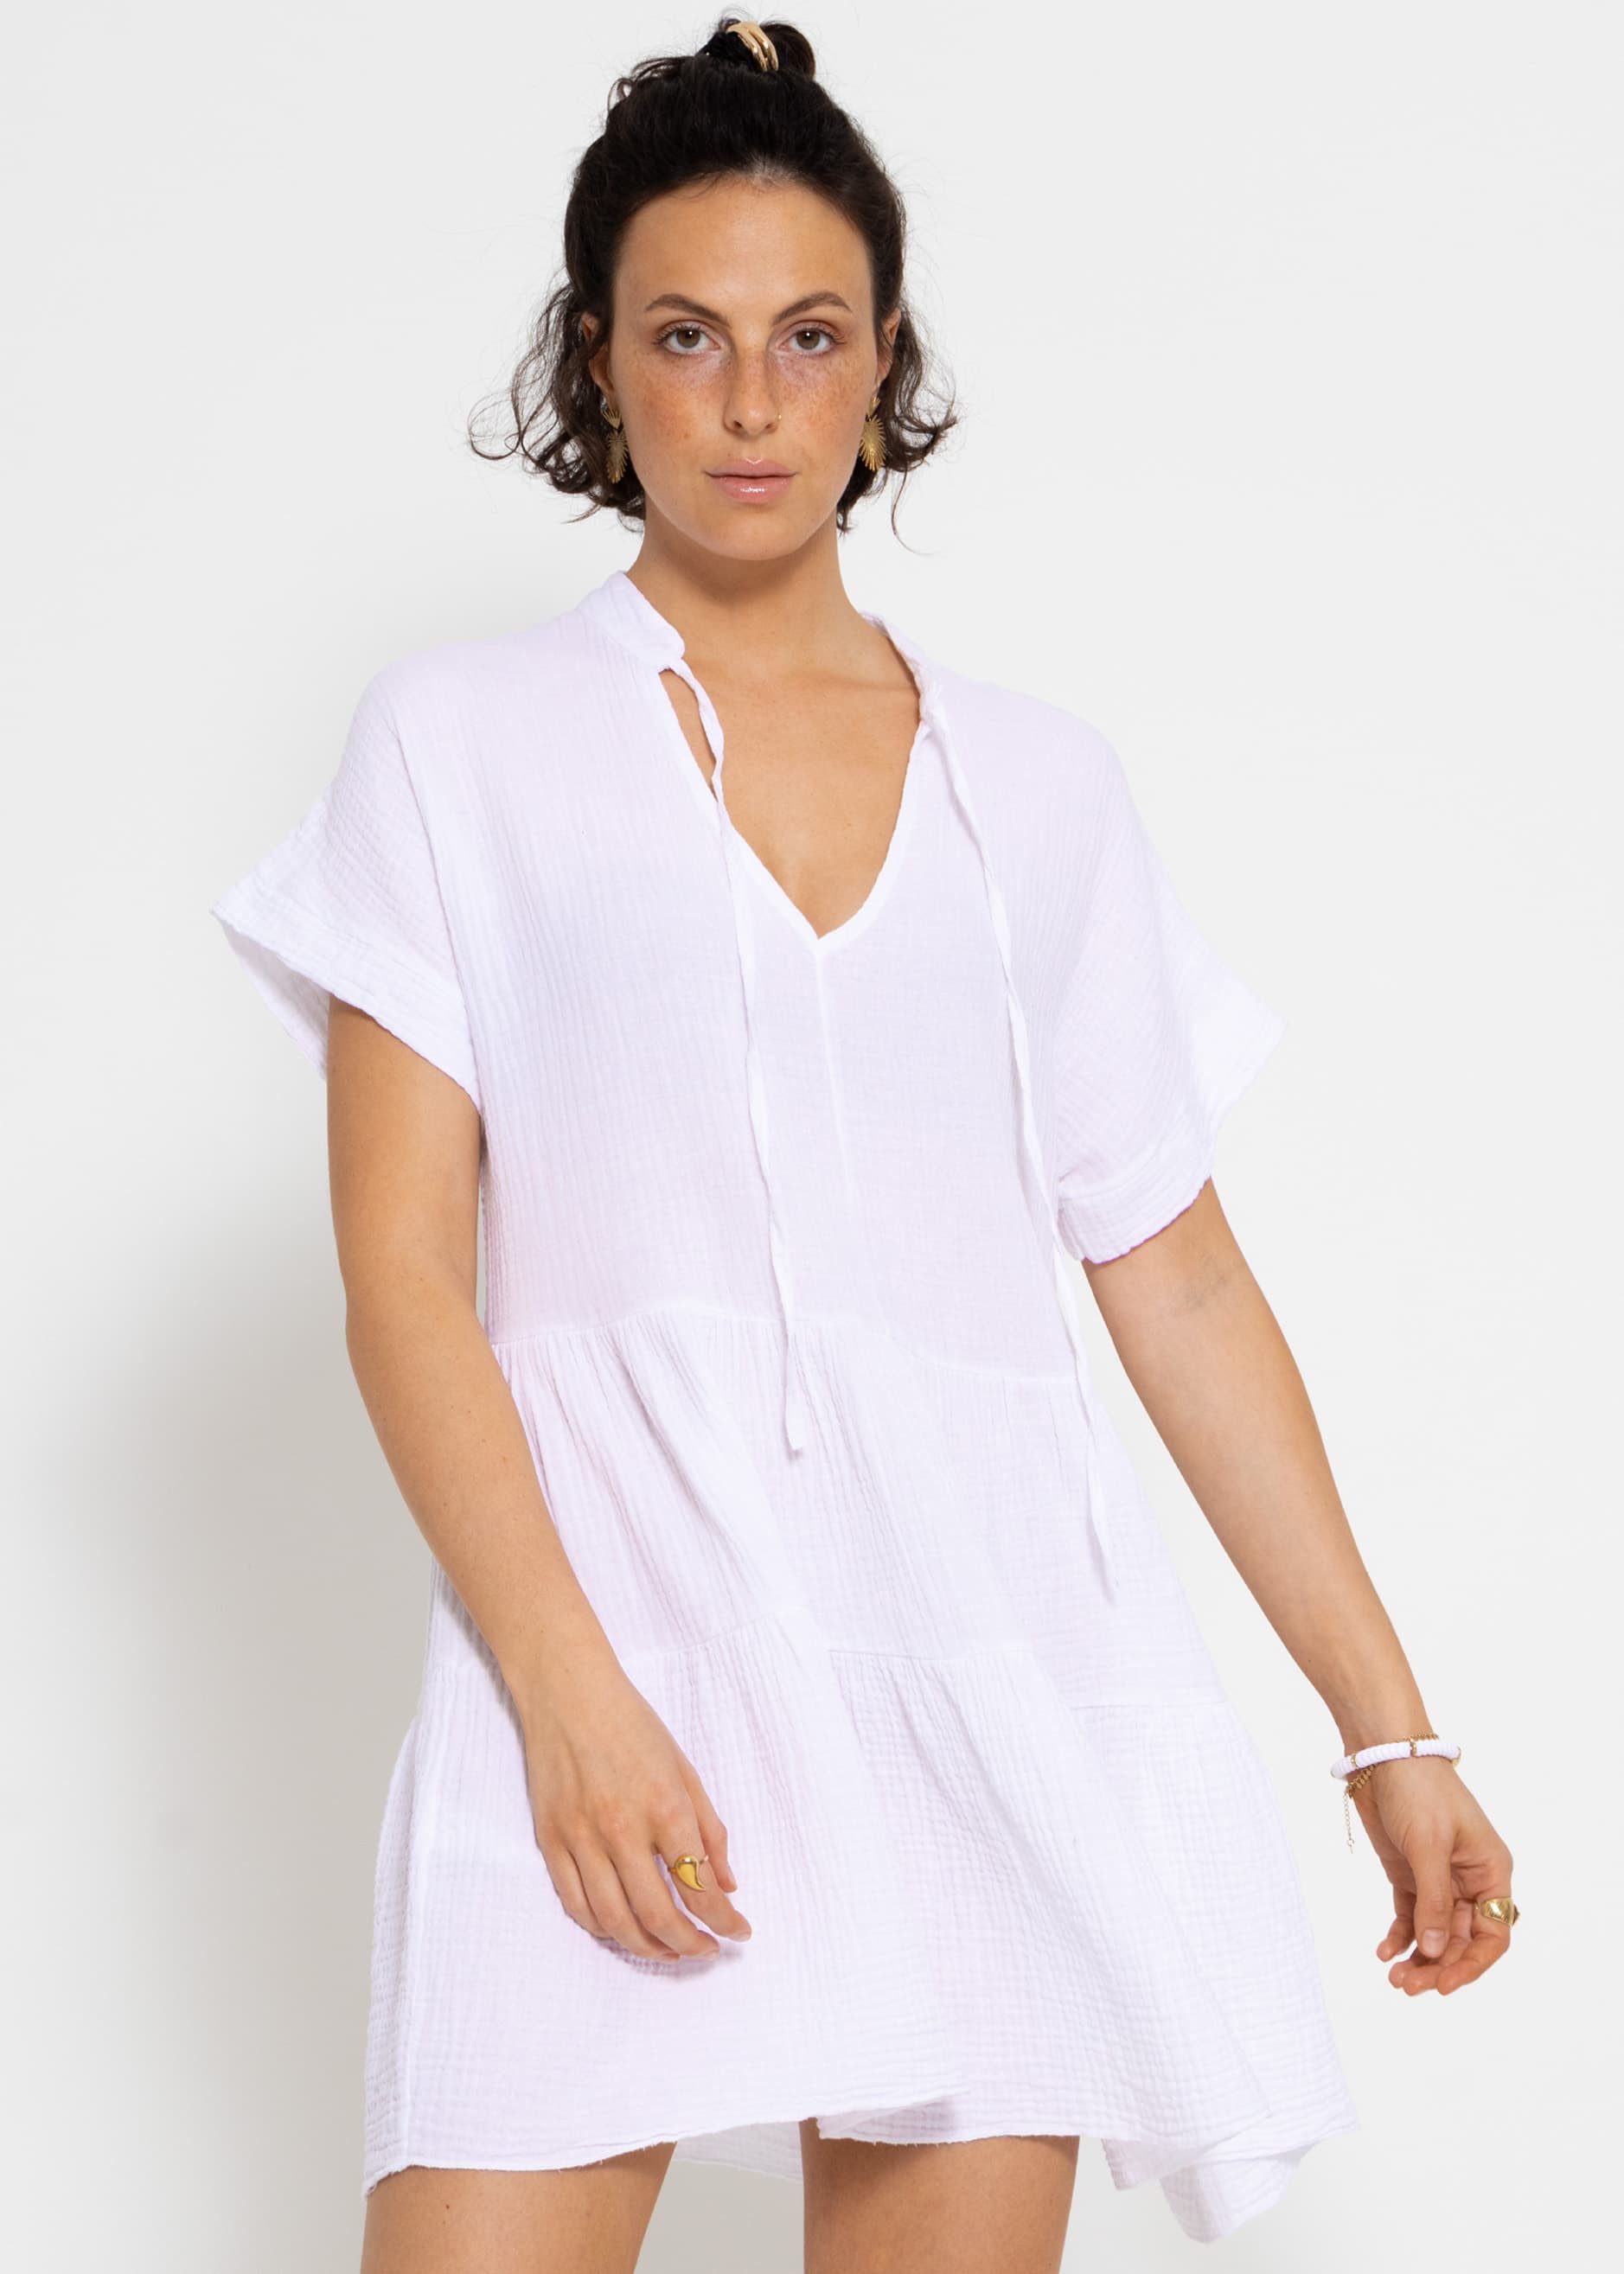 SASSYCLASSY Sommerkleid Musselin Kleid mit Volants 100% Baumwoll Kleid mit Volants, kurzen Ärmeln und Bindedetails